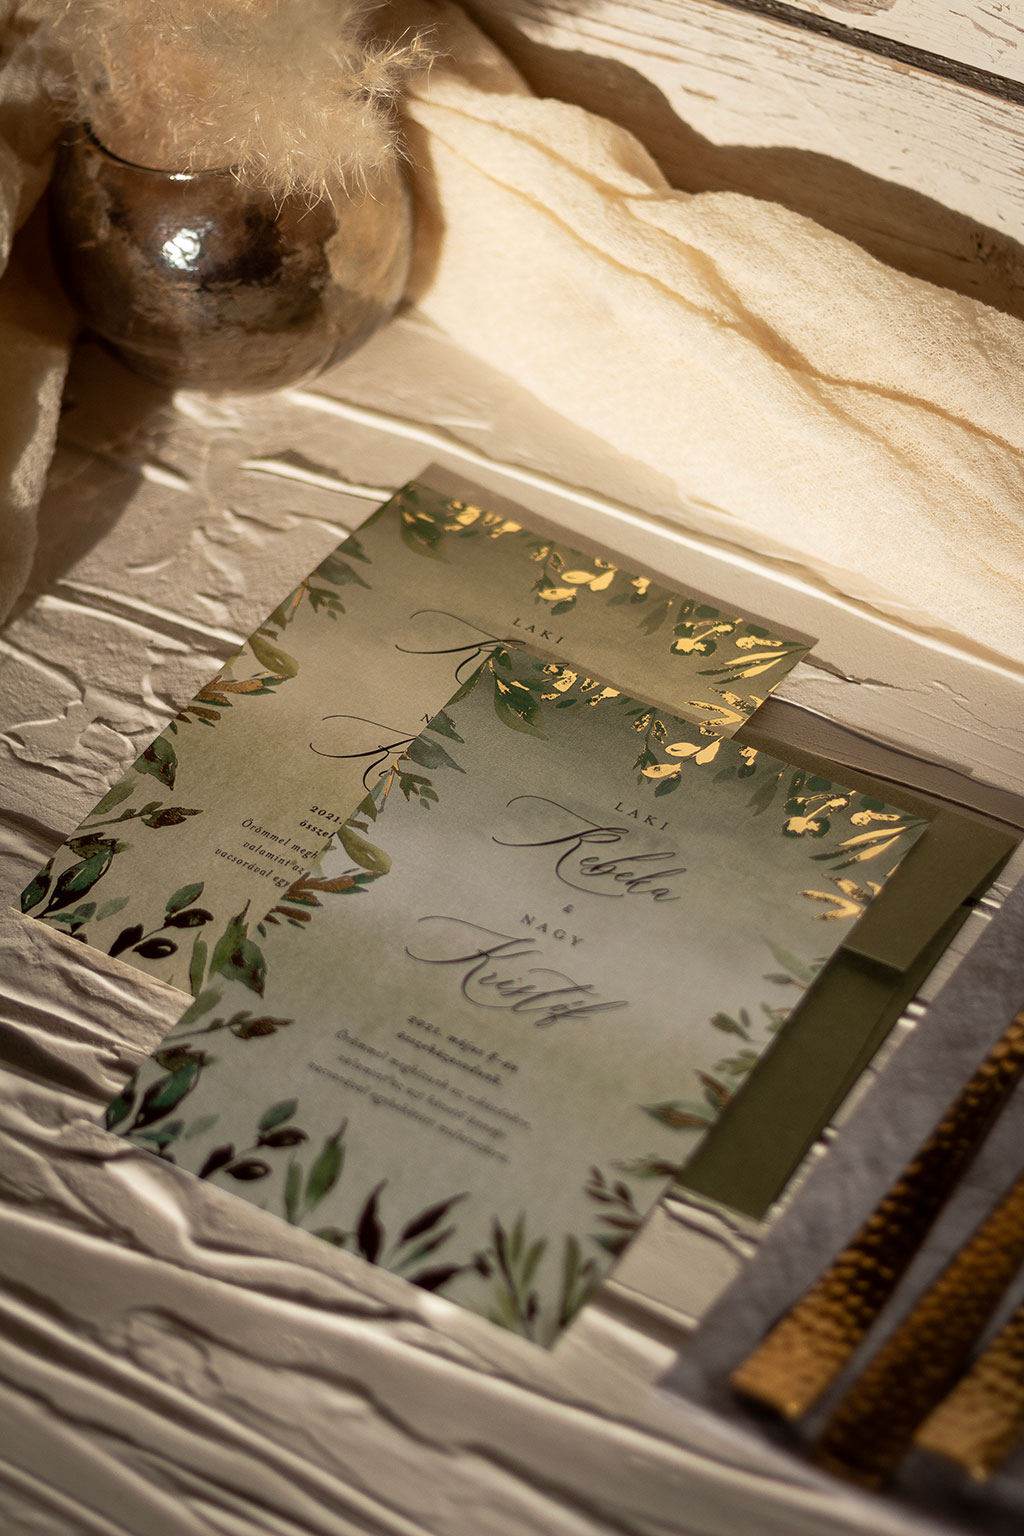 arany leveles greenery meghívó külső keretes díszítő grafikával és csillogó arany fólianyomással díszítve, fehér és krém színű aranyfényű papíron